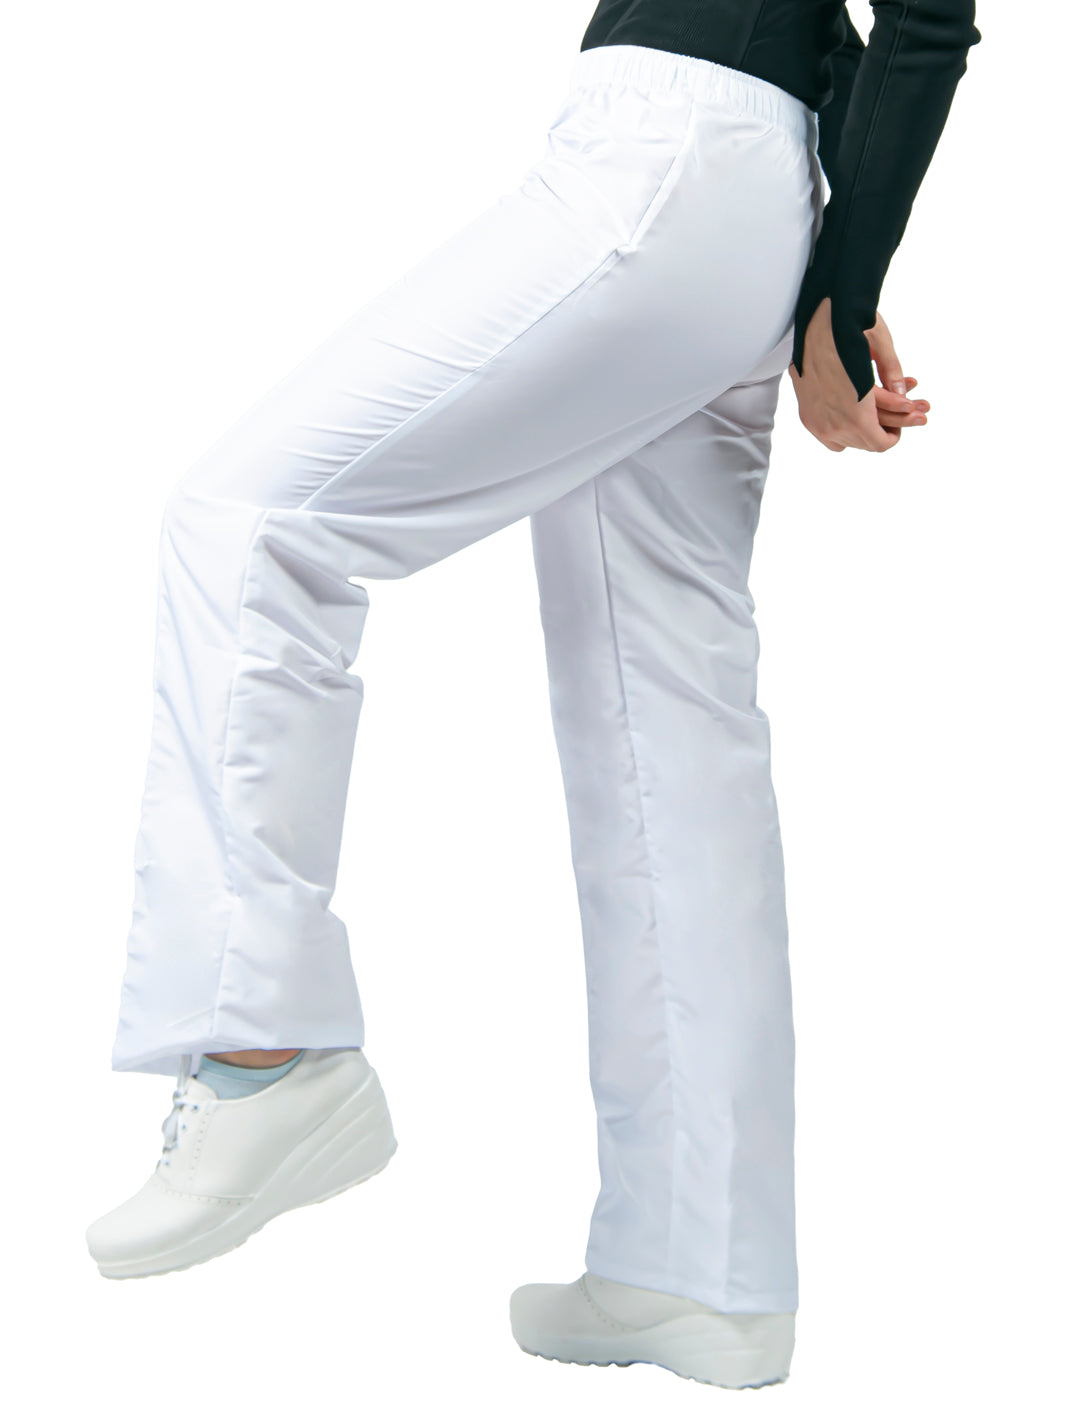 Vista lateral de la pierna del pantalón blanco para uso clínico de corte recto con cintura elástica